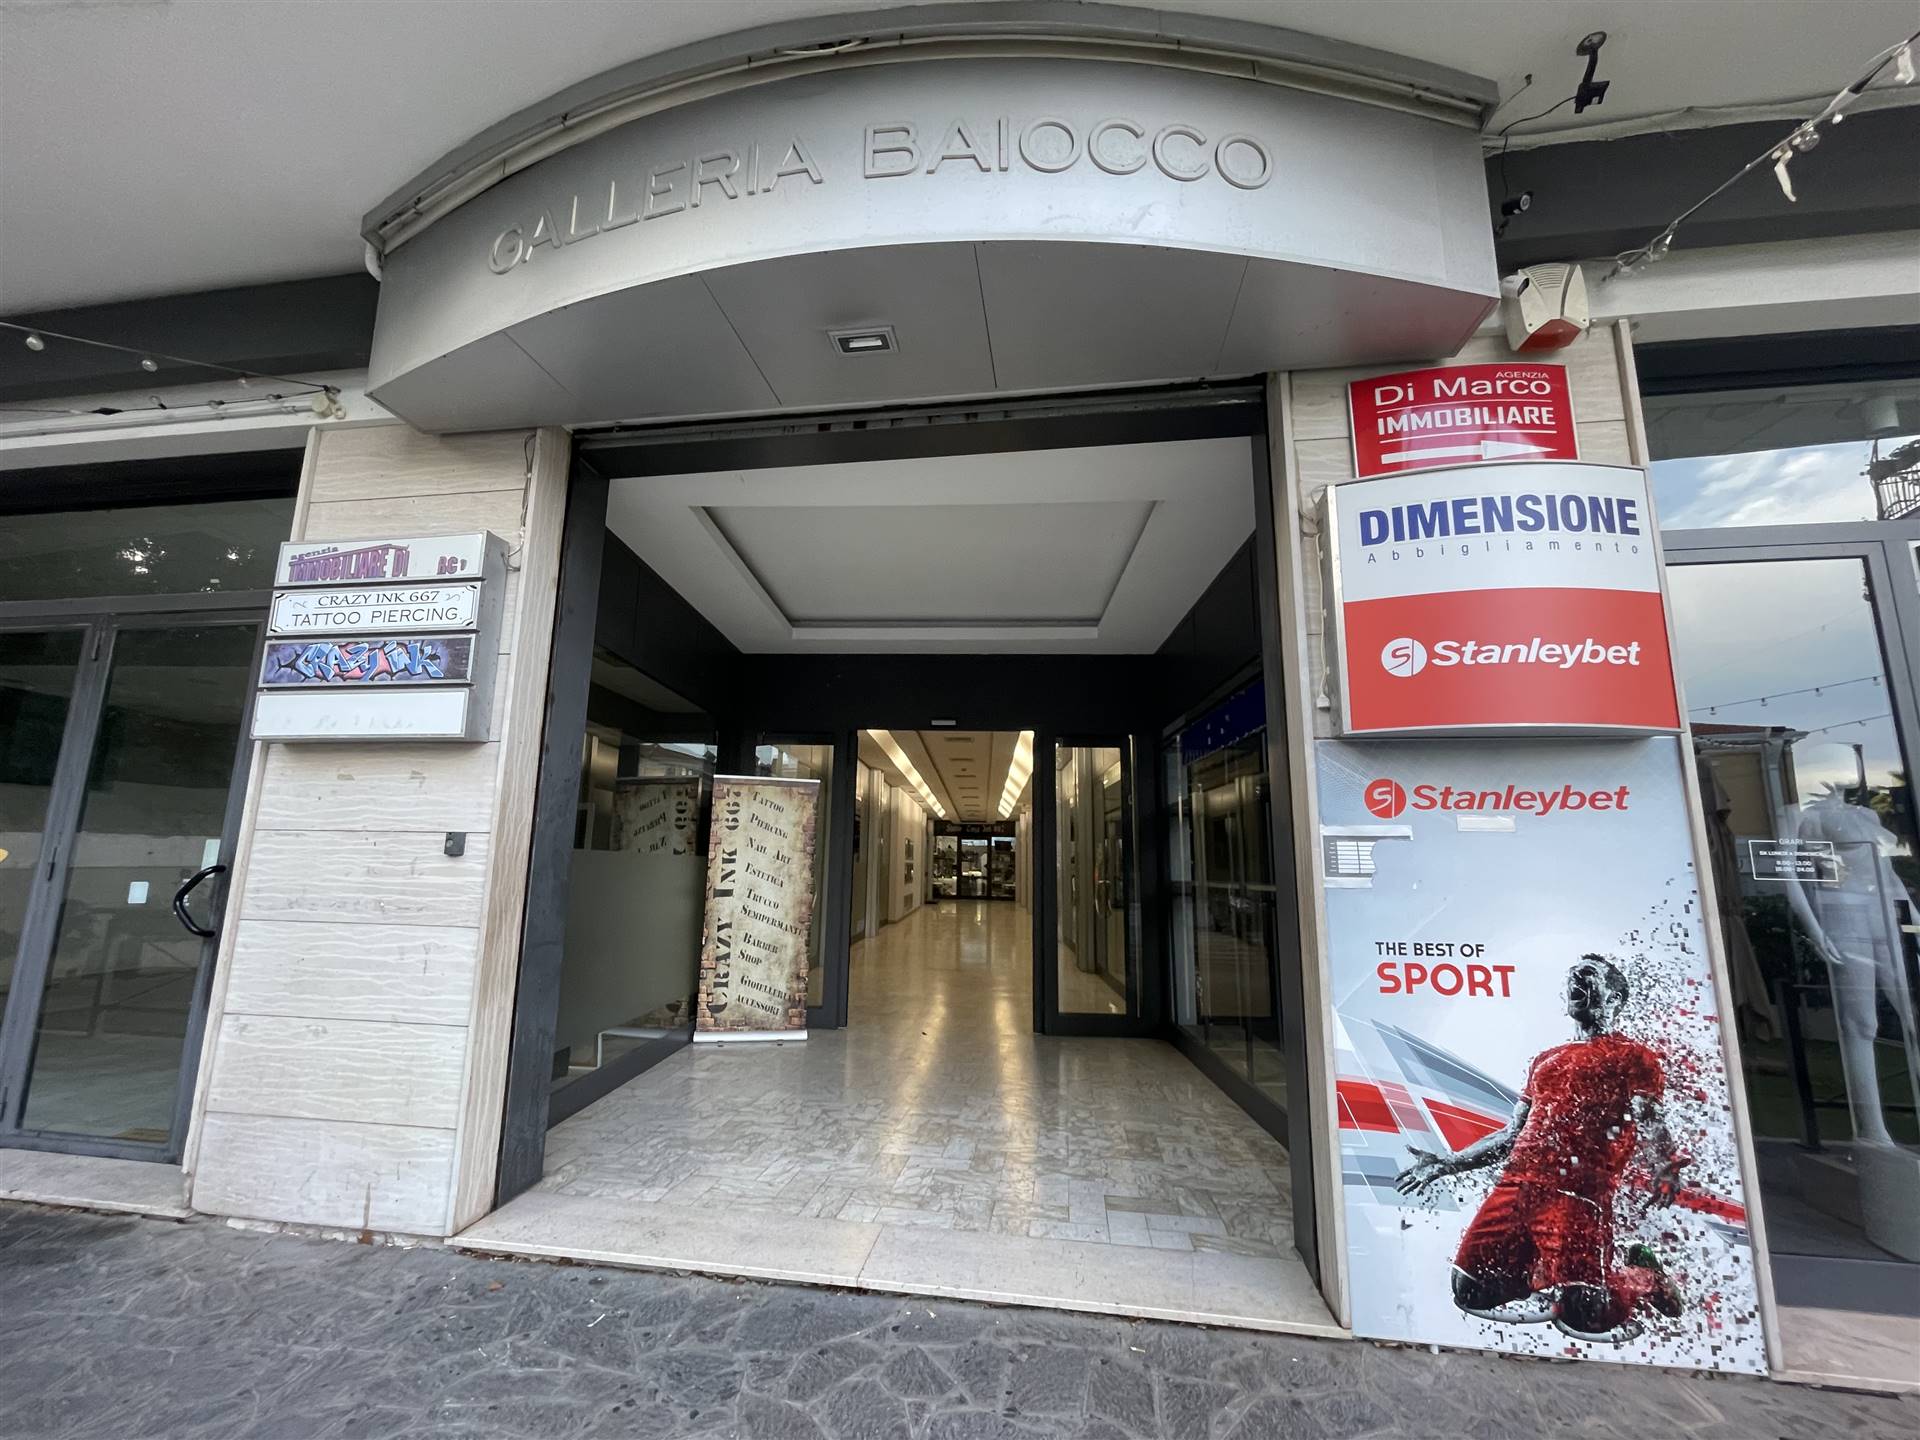 V 920 L'Agenzia Aliservice Immobiliare propone in vendita a VastoMarina nel cuore di viale Dalmazia vicino la gelateria Pannamore , un locale 